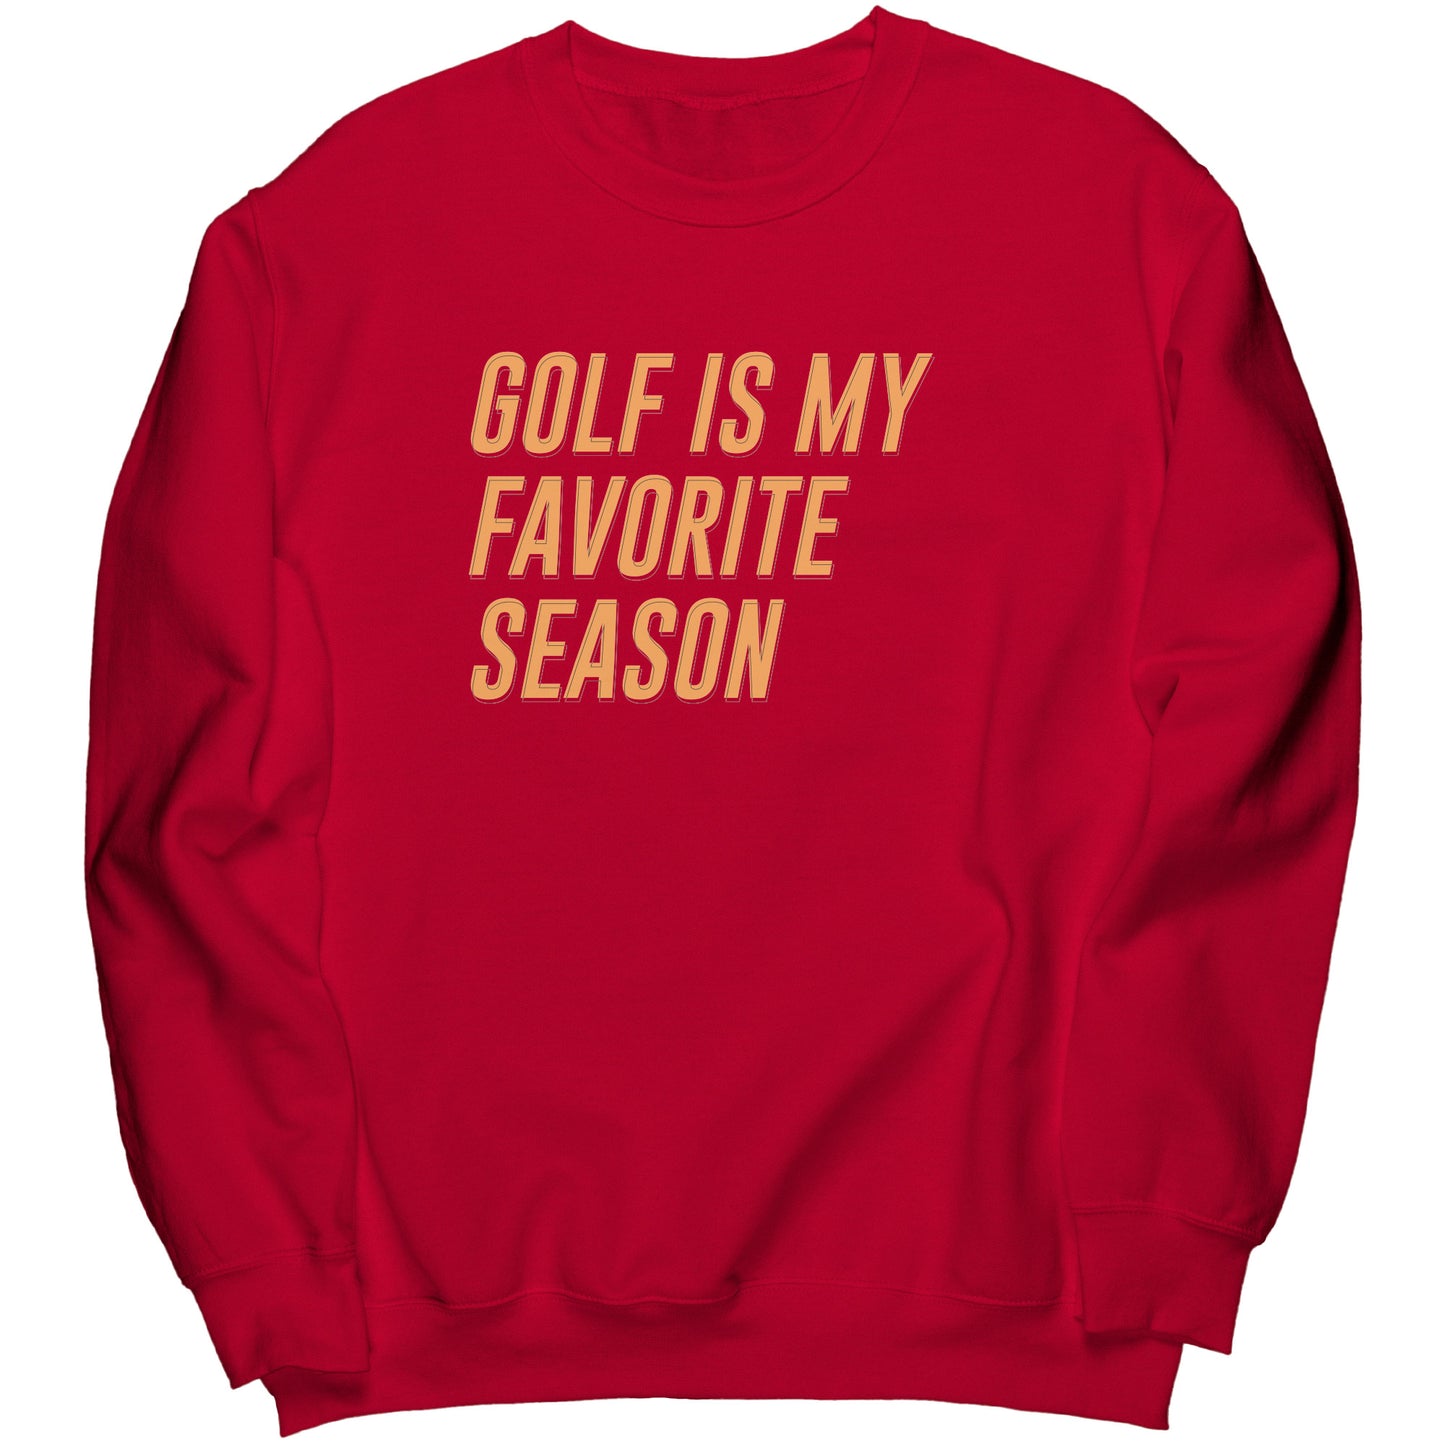 "Golf is my Favorite Season" Sweatshirt